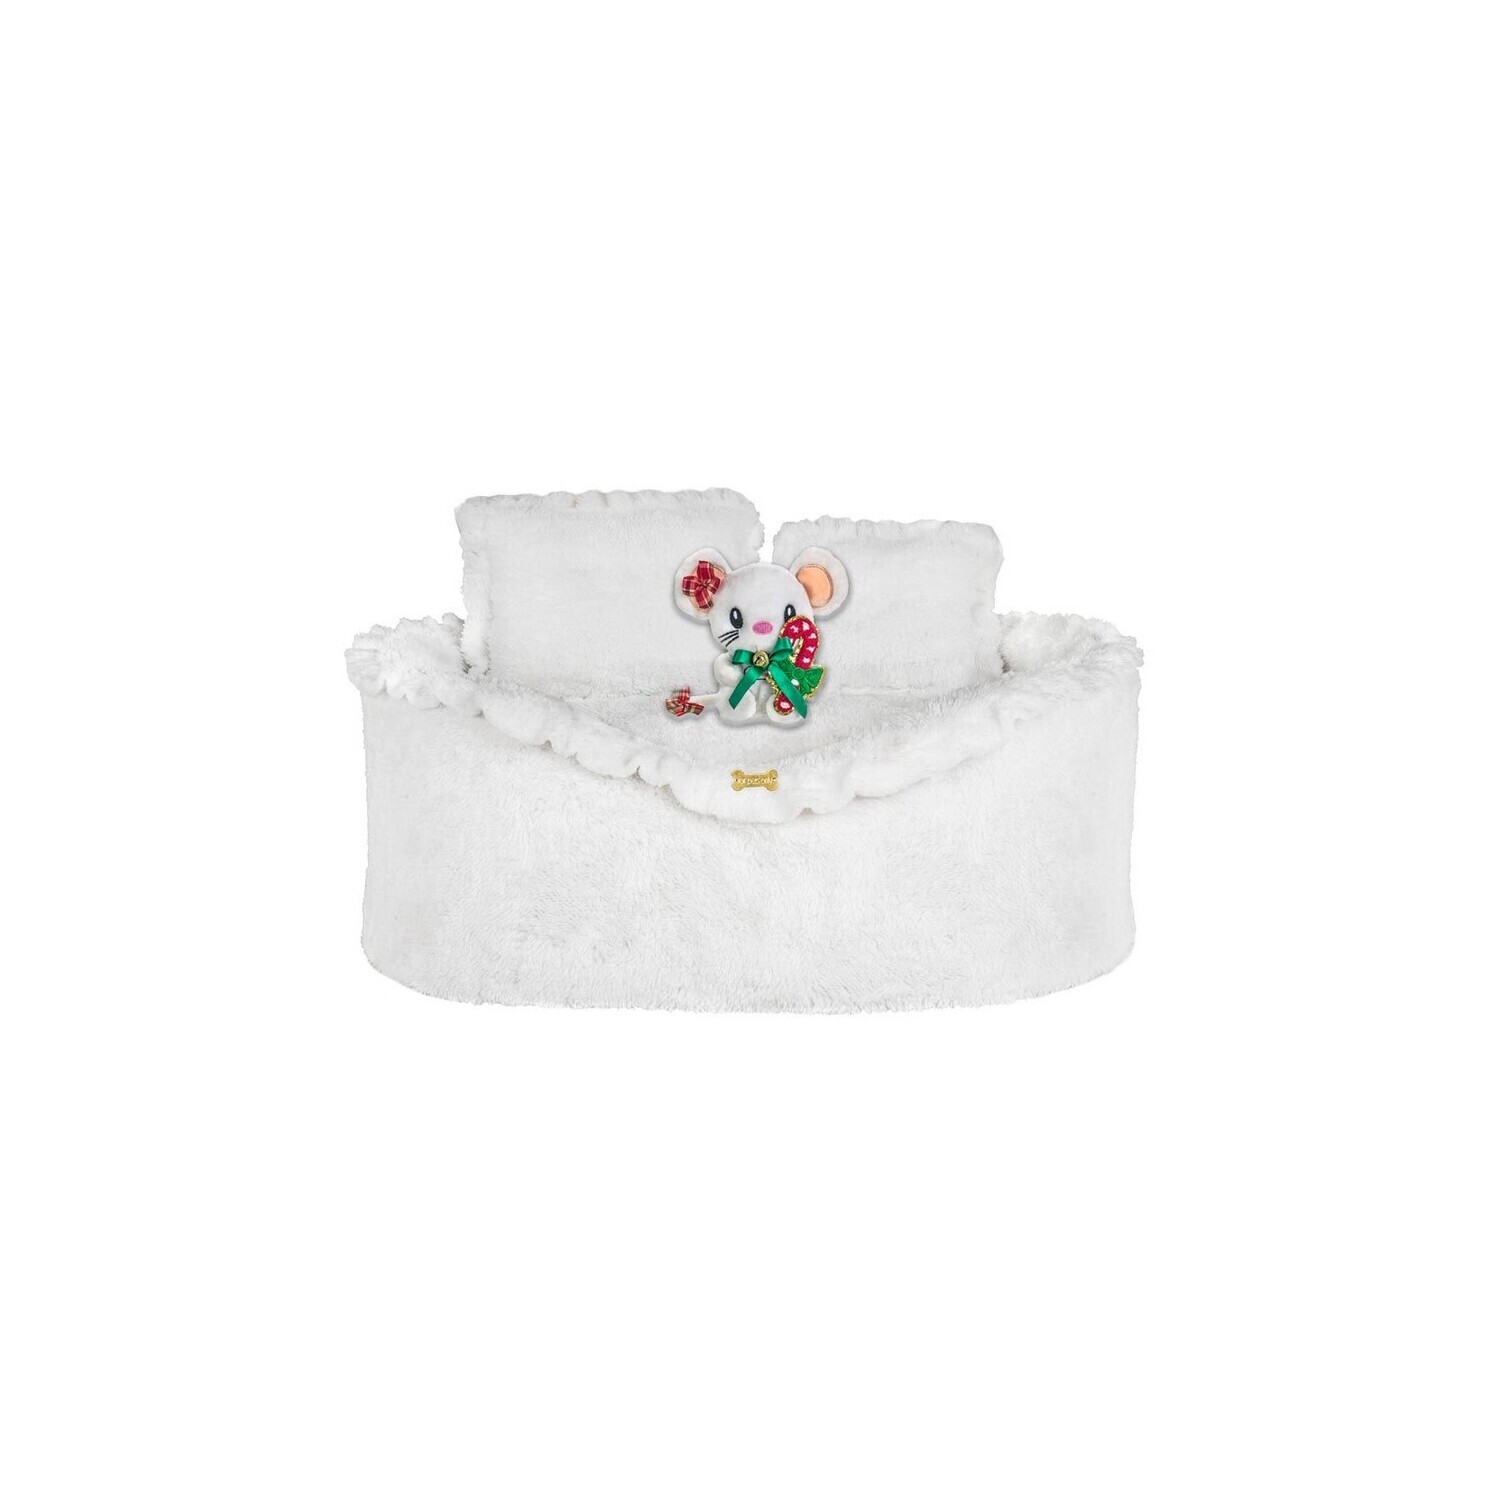 White sofa & Topomio Christmas toy